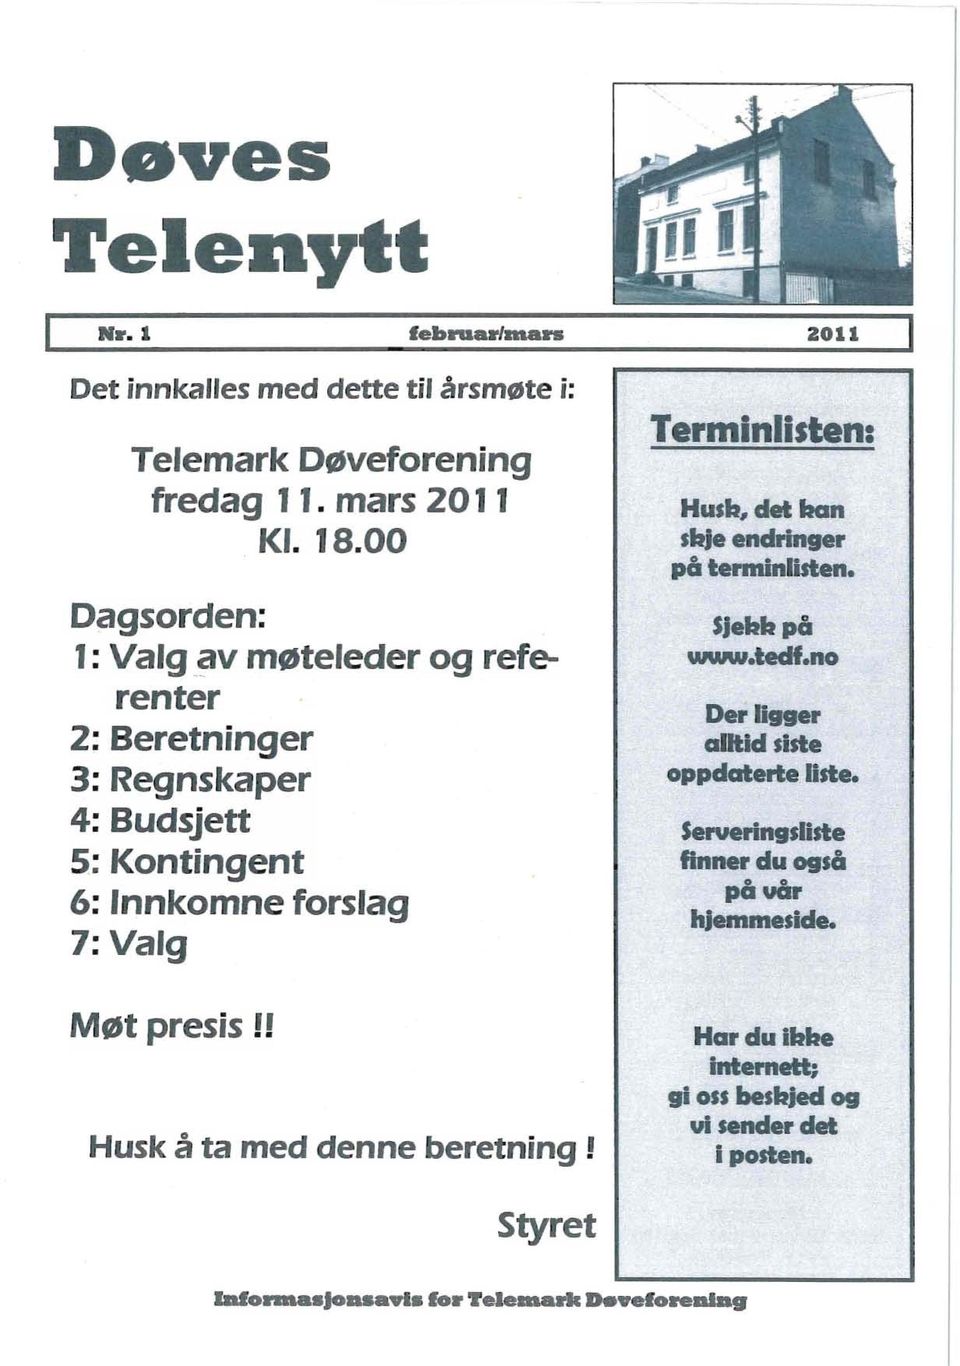 ! Husk å ta med denne beretning! 2011 Terminlisten: Husb, det ban sbje endringer på terminlisten. SJebbpå www.tedf.